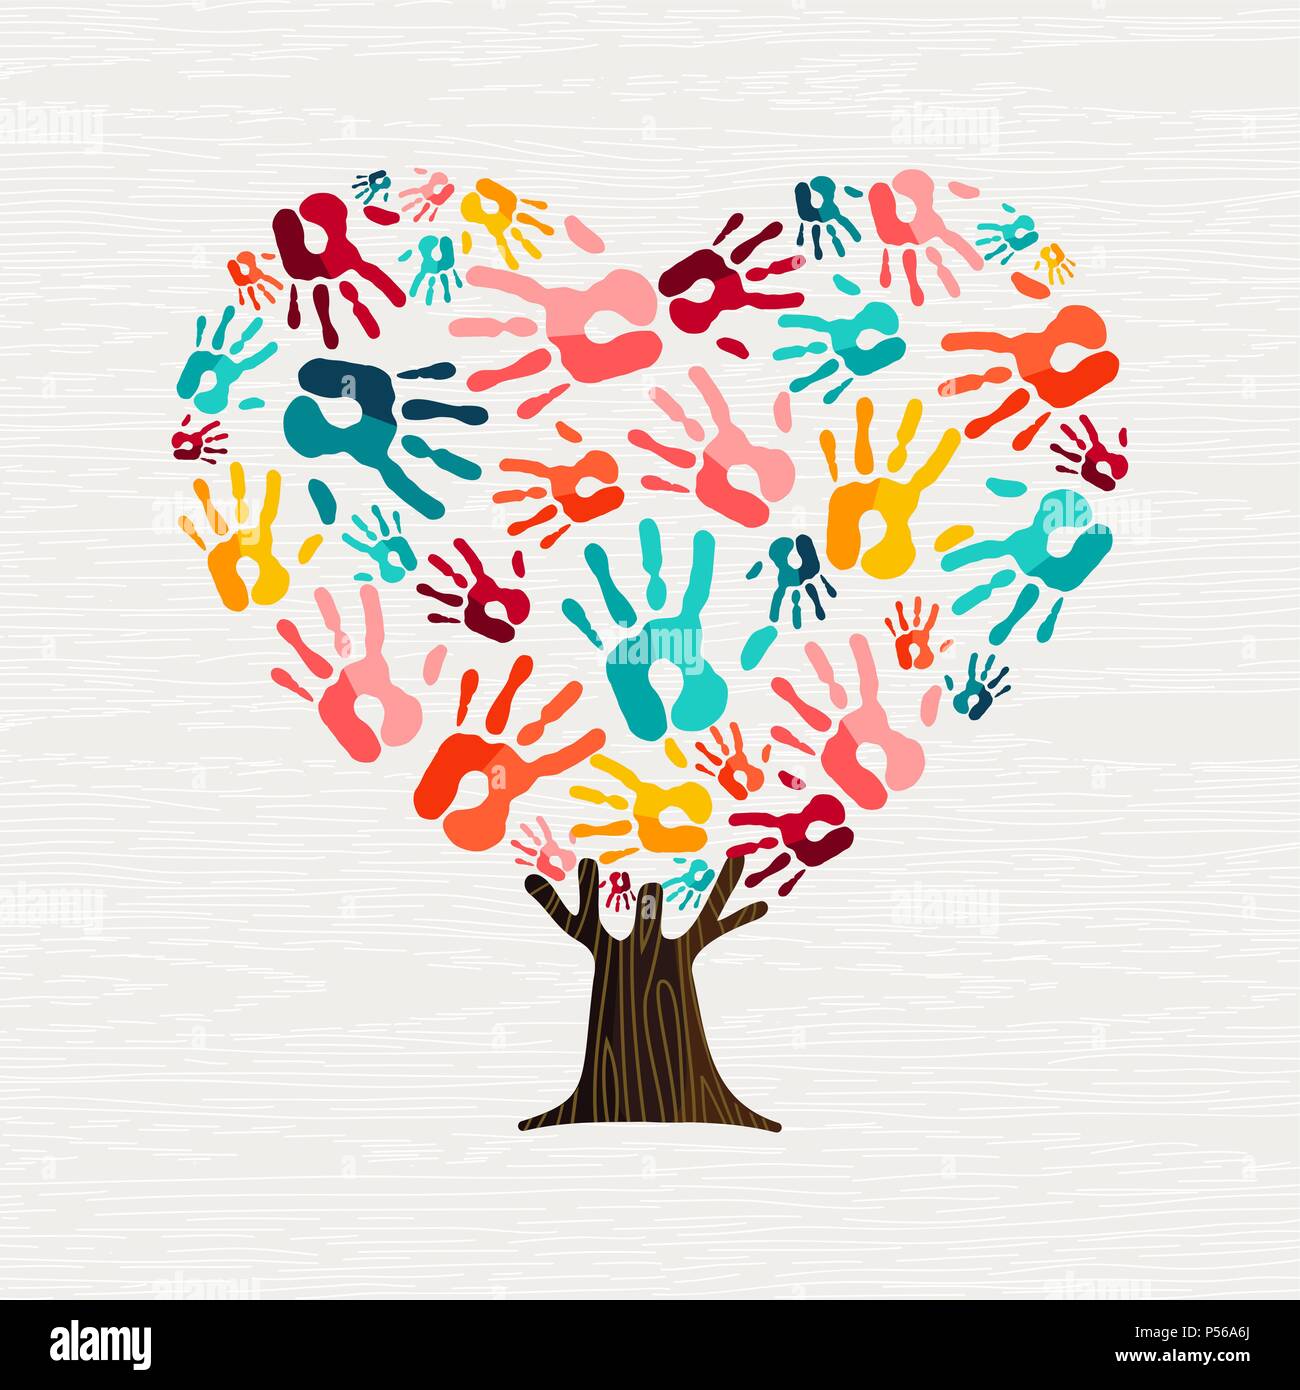 Baum aus bunten menschliche Hände in Herzform. Community Hilfe Konzept oder soziales Projekt. EPS 10 Vektor. Stock Vektor